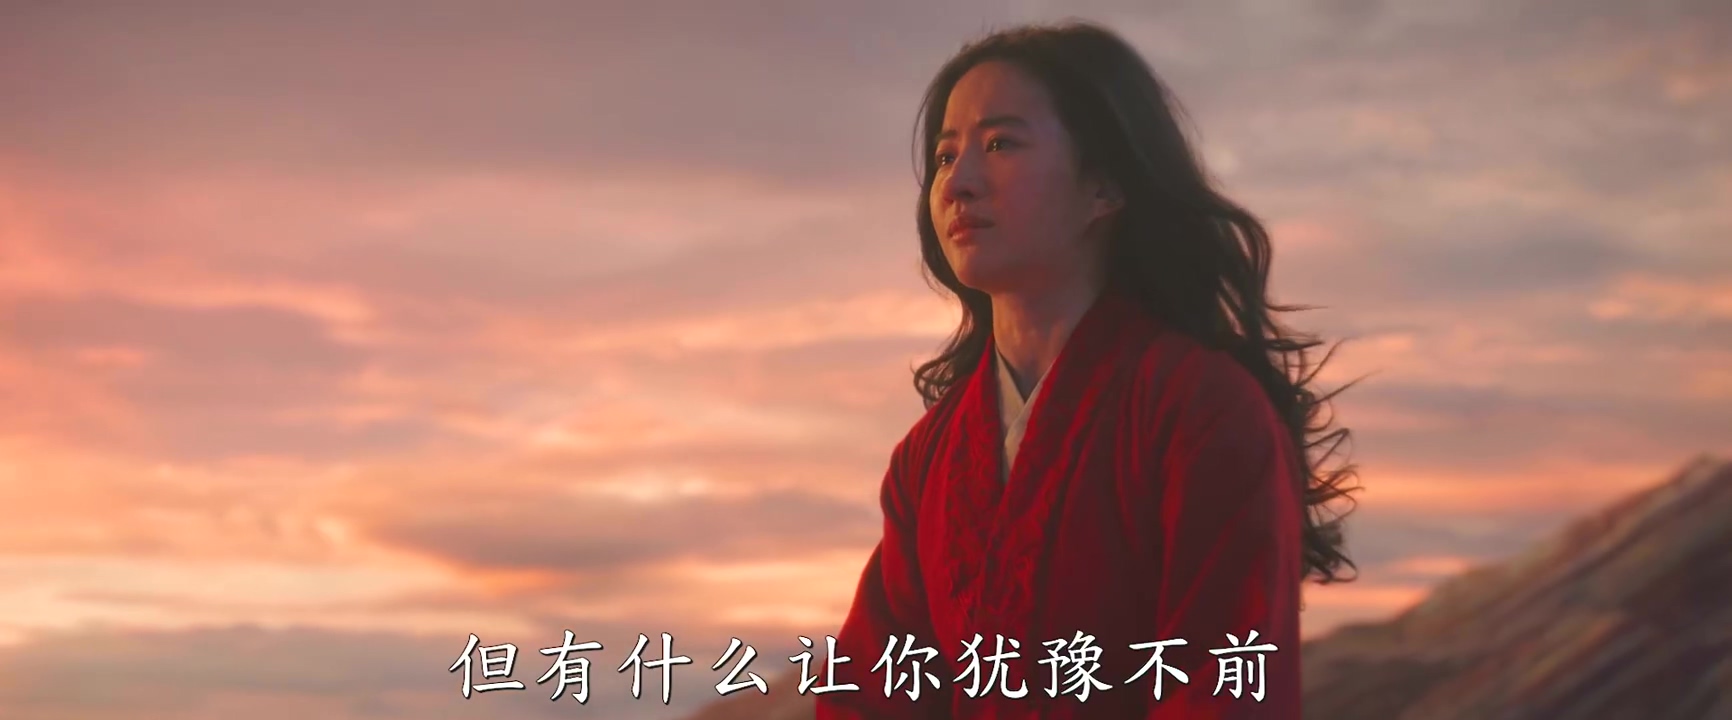 《花木兰》全新中文版预告 巩俐女巫造型首曝光